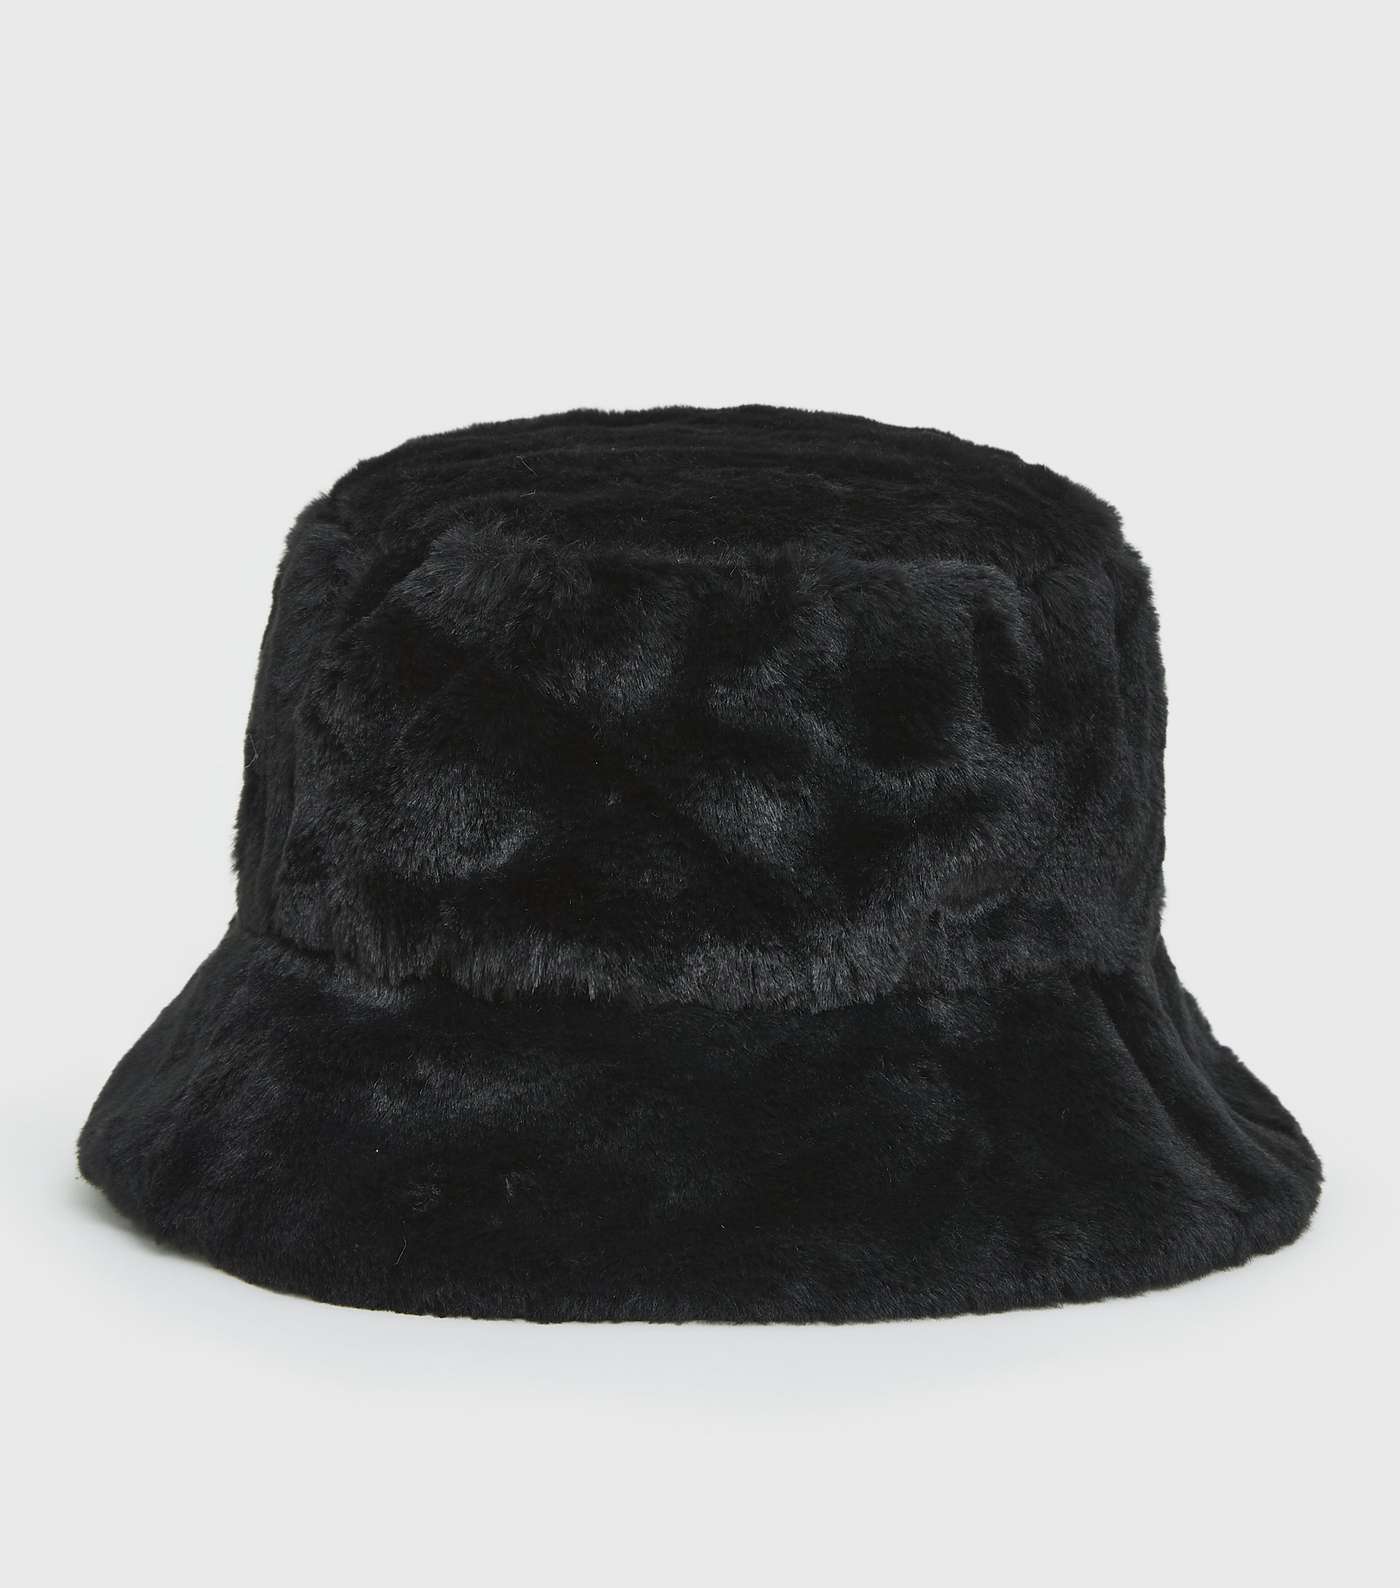 PIECES Black Faux Fur Bucket Hat Image 2